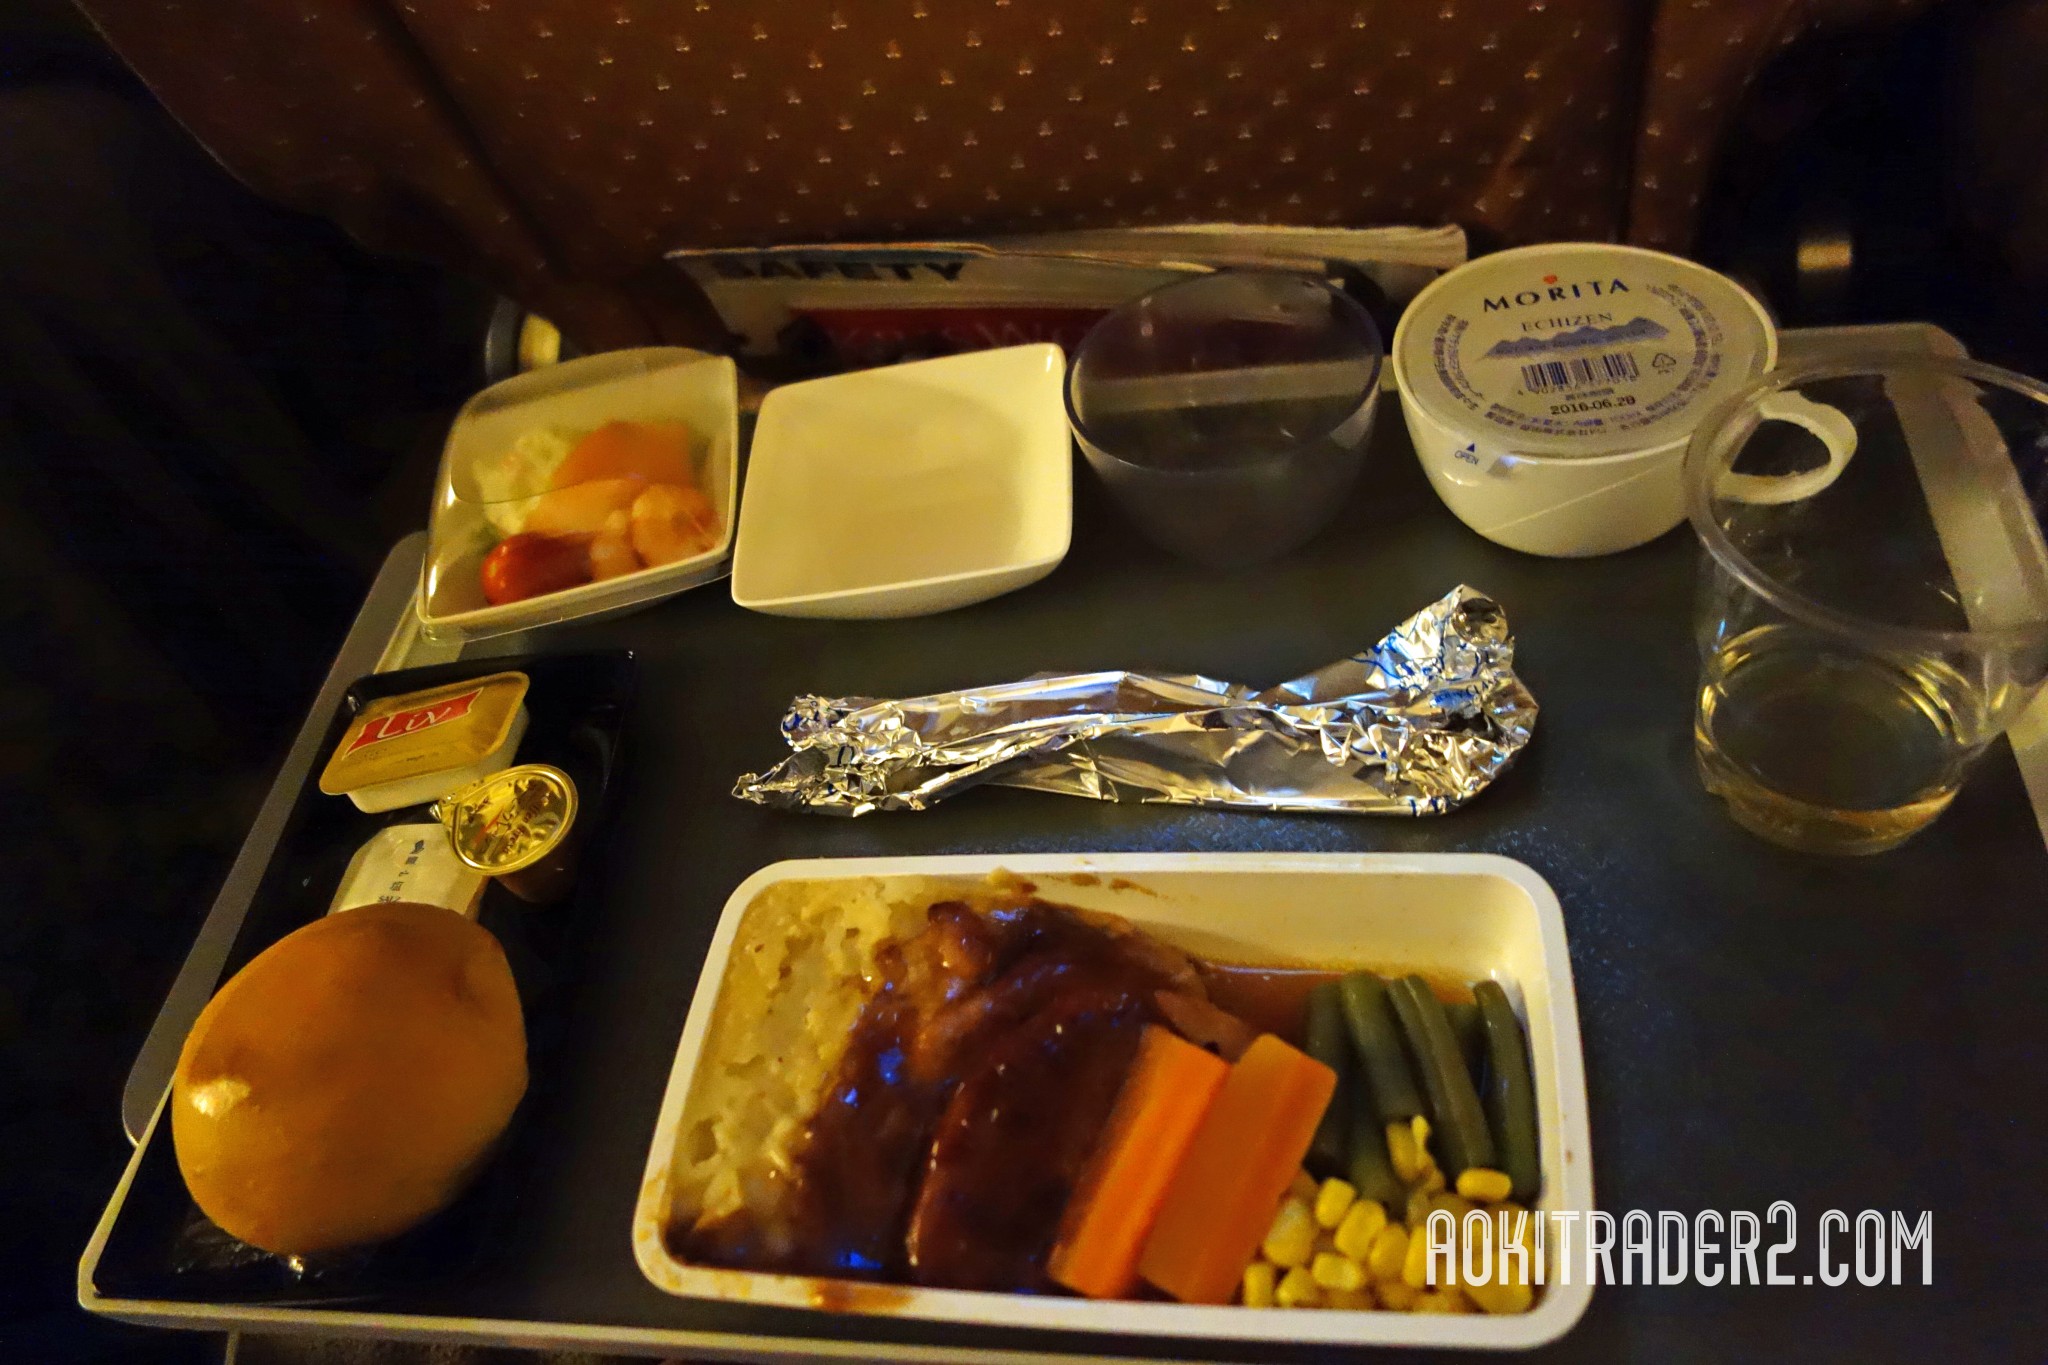 シンガポール航空の機内食夕食